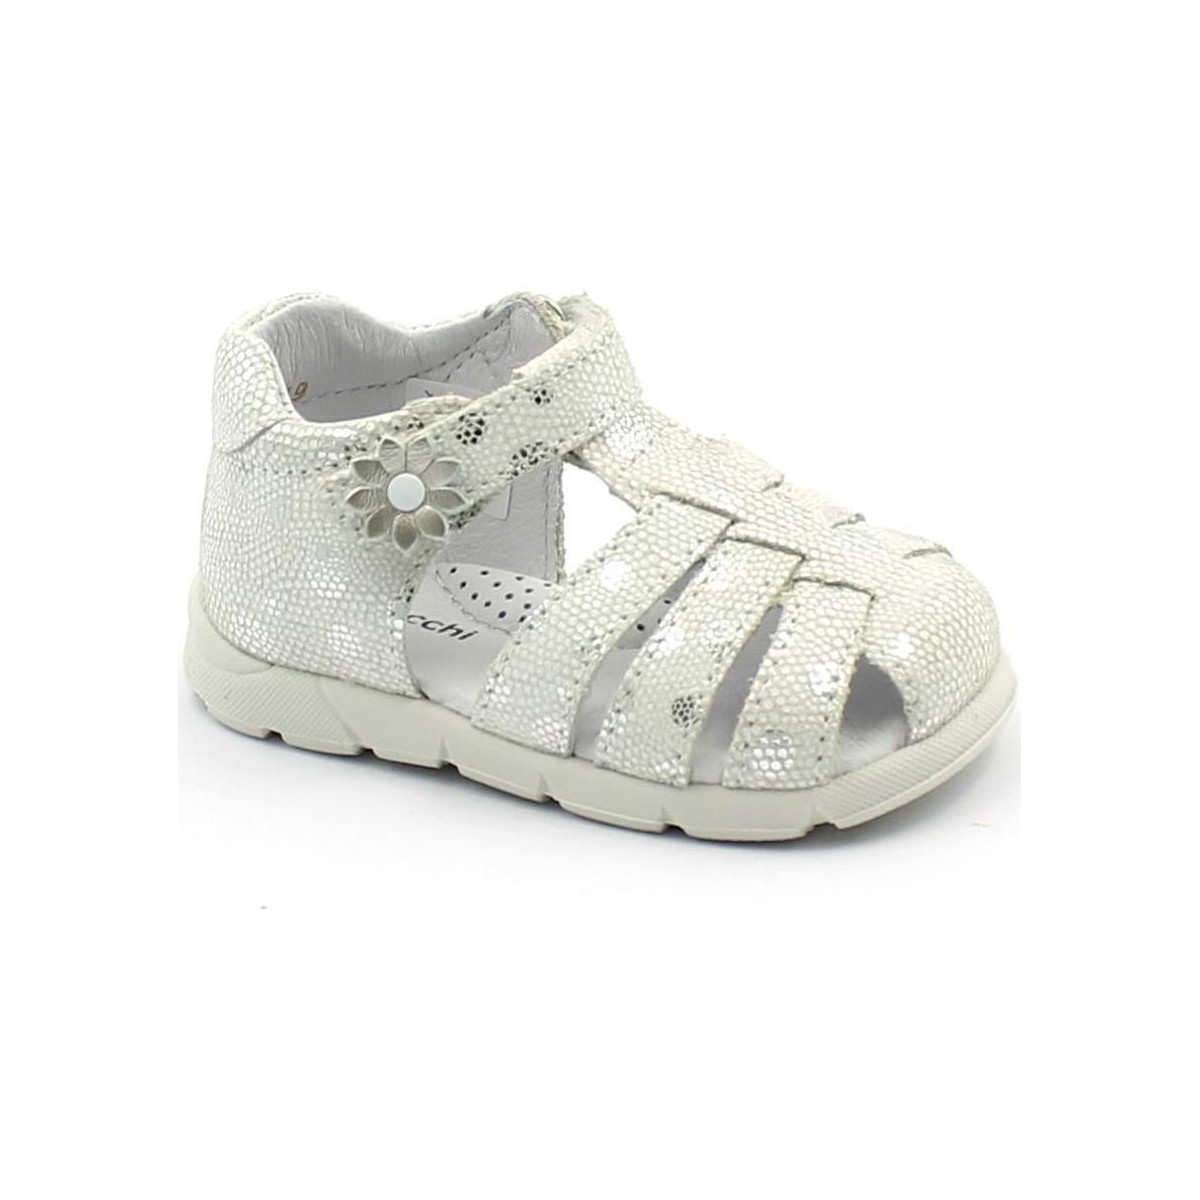 Sapatos Criança Sandálias Balocchi BAL-E21-116184-VA-b Branco